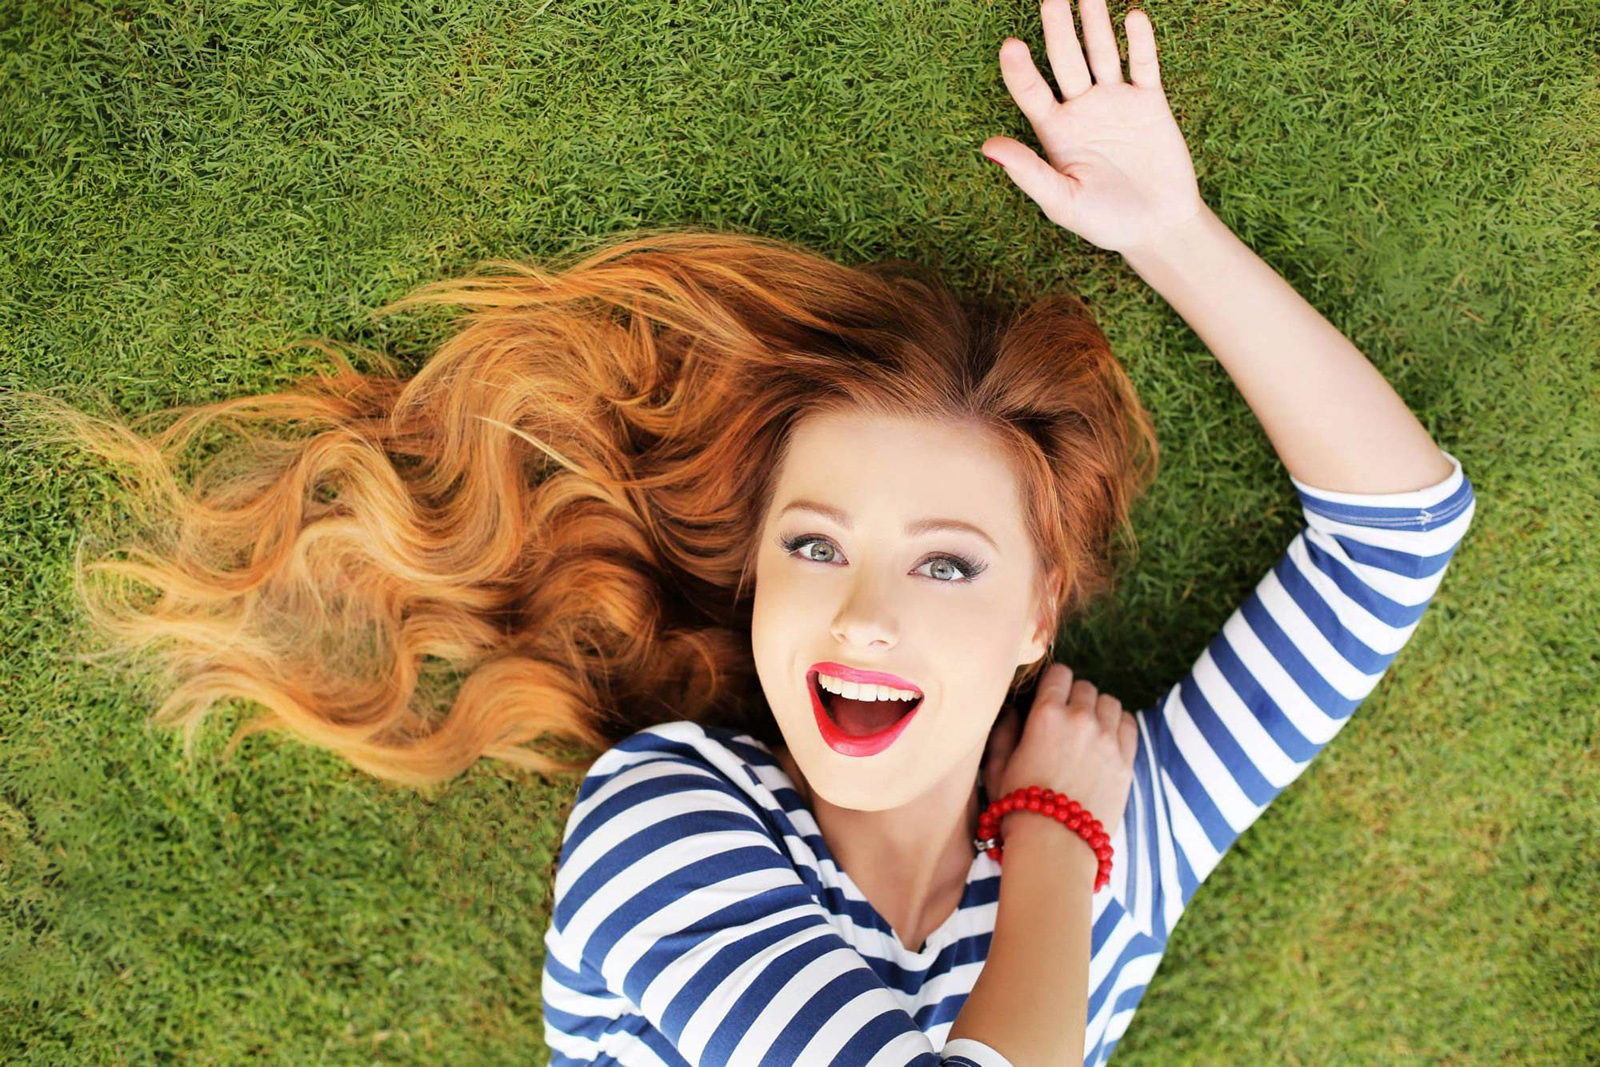 Yulia Savicheva Women Singer Redhead Russian Russian Women Grass Lipstick Smiling Lying Down 